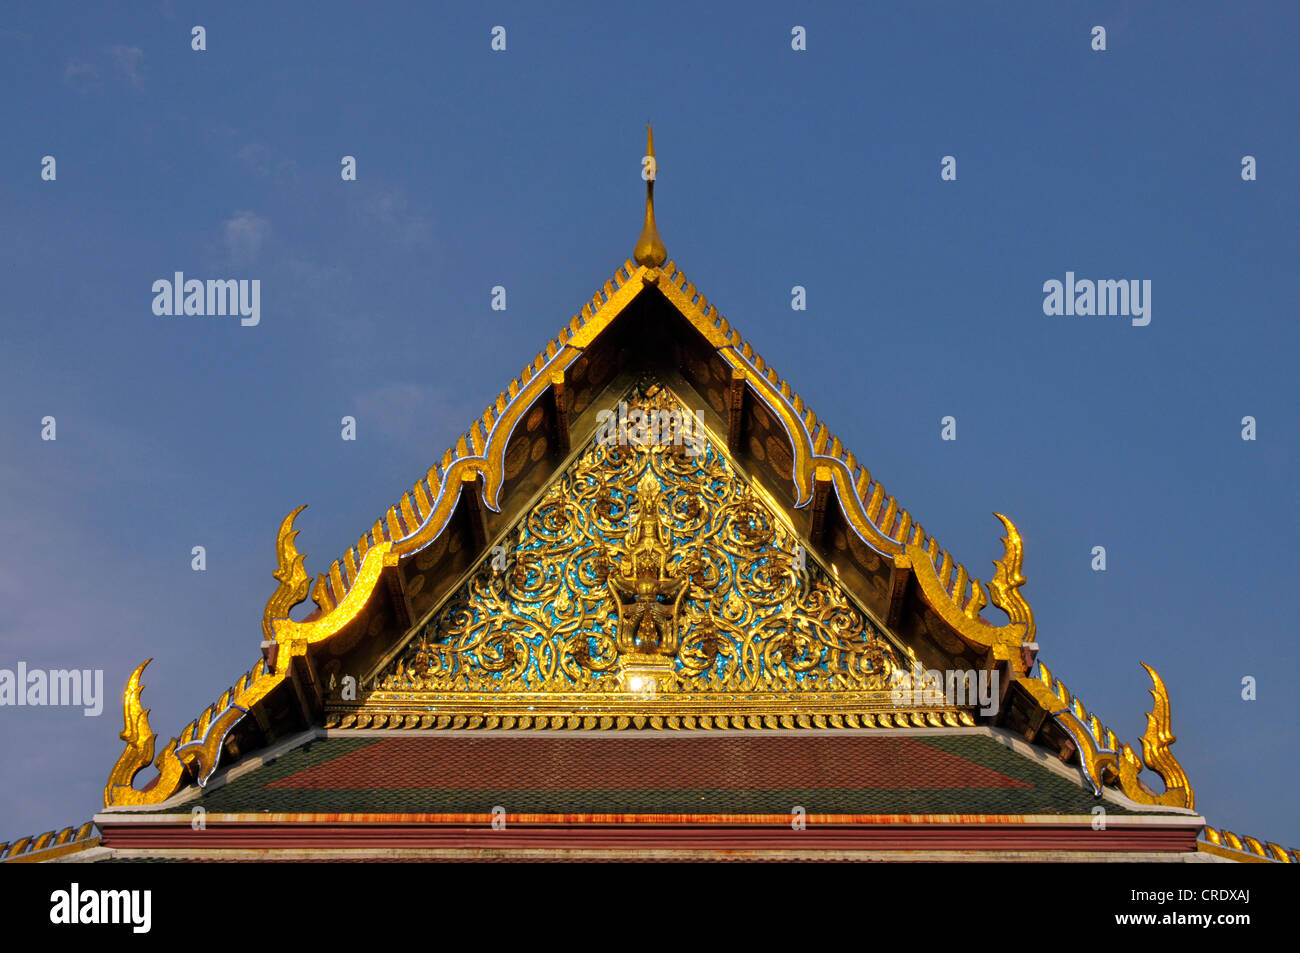 Fronton avec Garuda et les Nagas, Chofahs ciel, Tassel, caractéristique des ornements architecturaux sur le toit d'édifices bouddhistes Banque D'Images